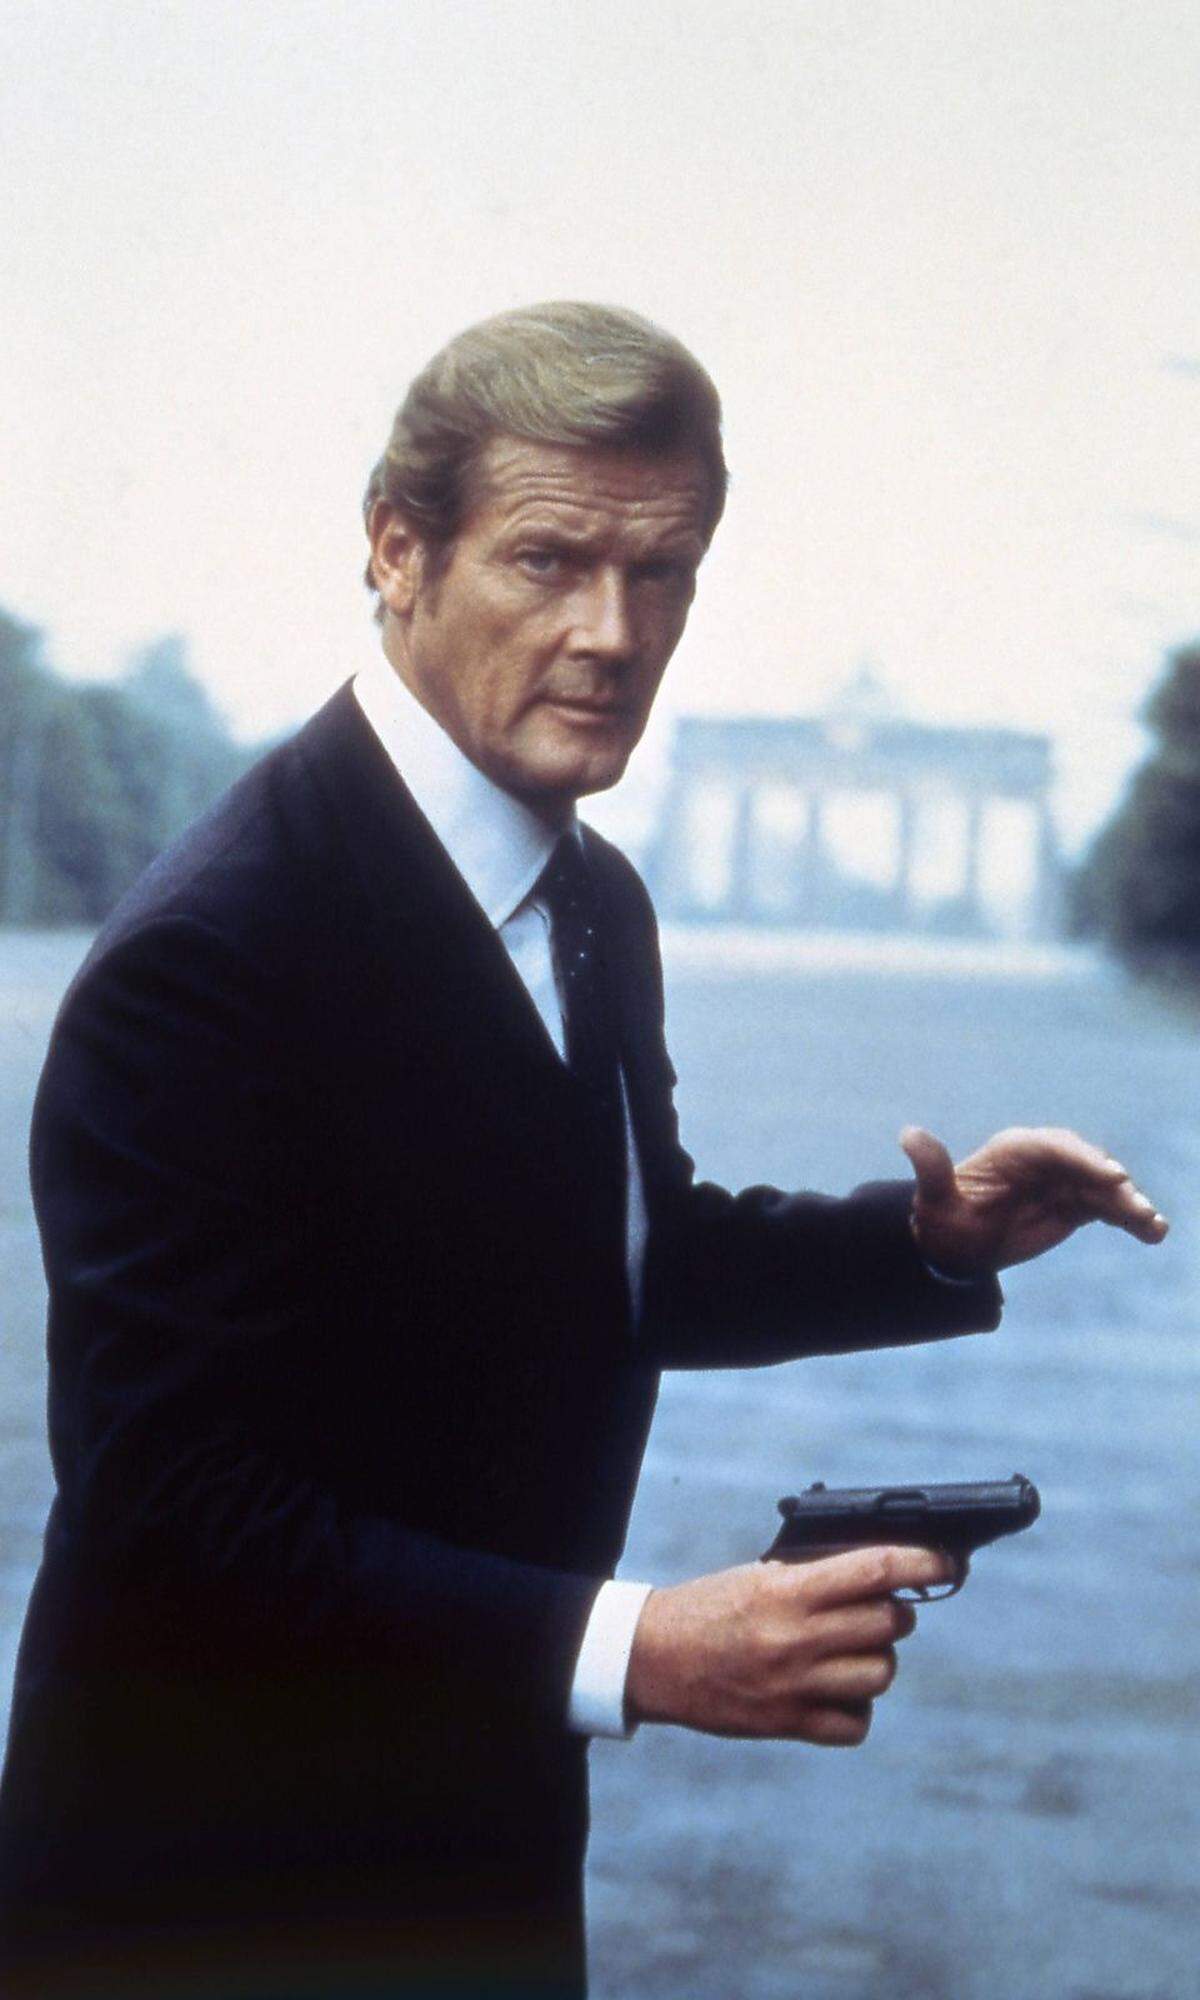 Auch für den Rest seines Lebens wurde Sir Roger mit der Rolle als 007 in Verbindung gebracht - obwohl er nie einen Wodka Martini mit den Worten "geschüttelt, nicht gerührt" bestellt hat. "Die Leute grüßen mich noch immer manchmal als James Bond", sagte Moore vor wenigen Jahren in einem Interview der Nachrichtenagentur dpa vor seinem 85. Geburtstag. Bild: Roger Moore 1983 in "Octopussy"